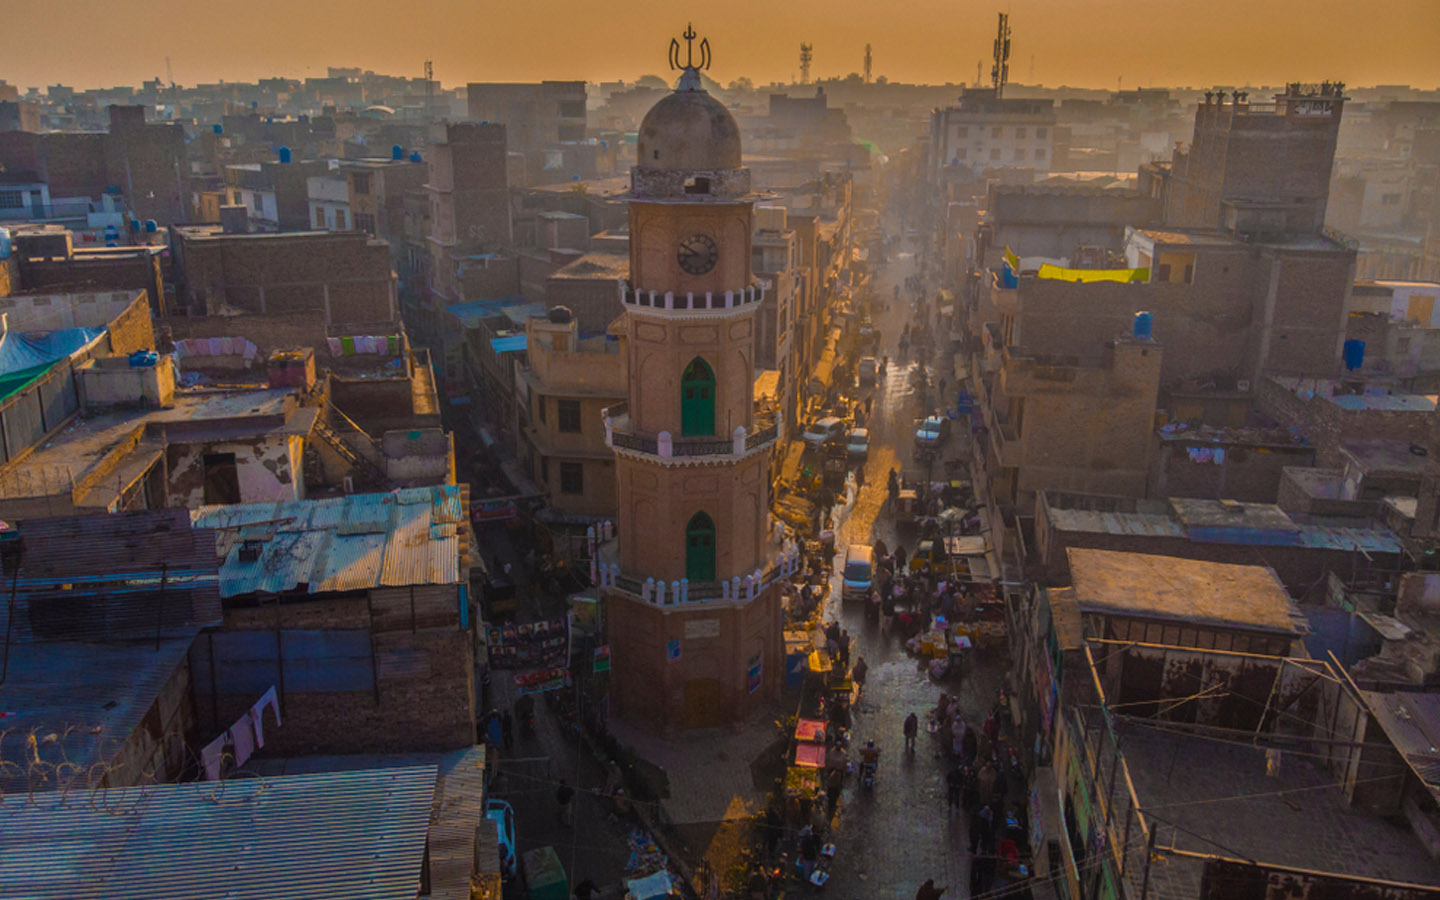 Gulbahar, Peshawar offers an array of amenities 